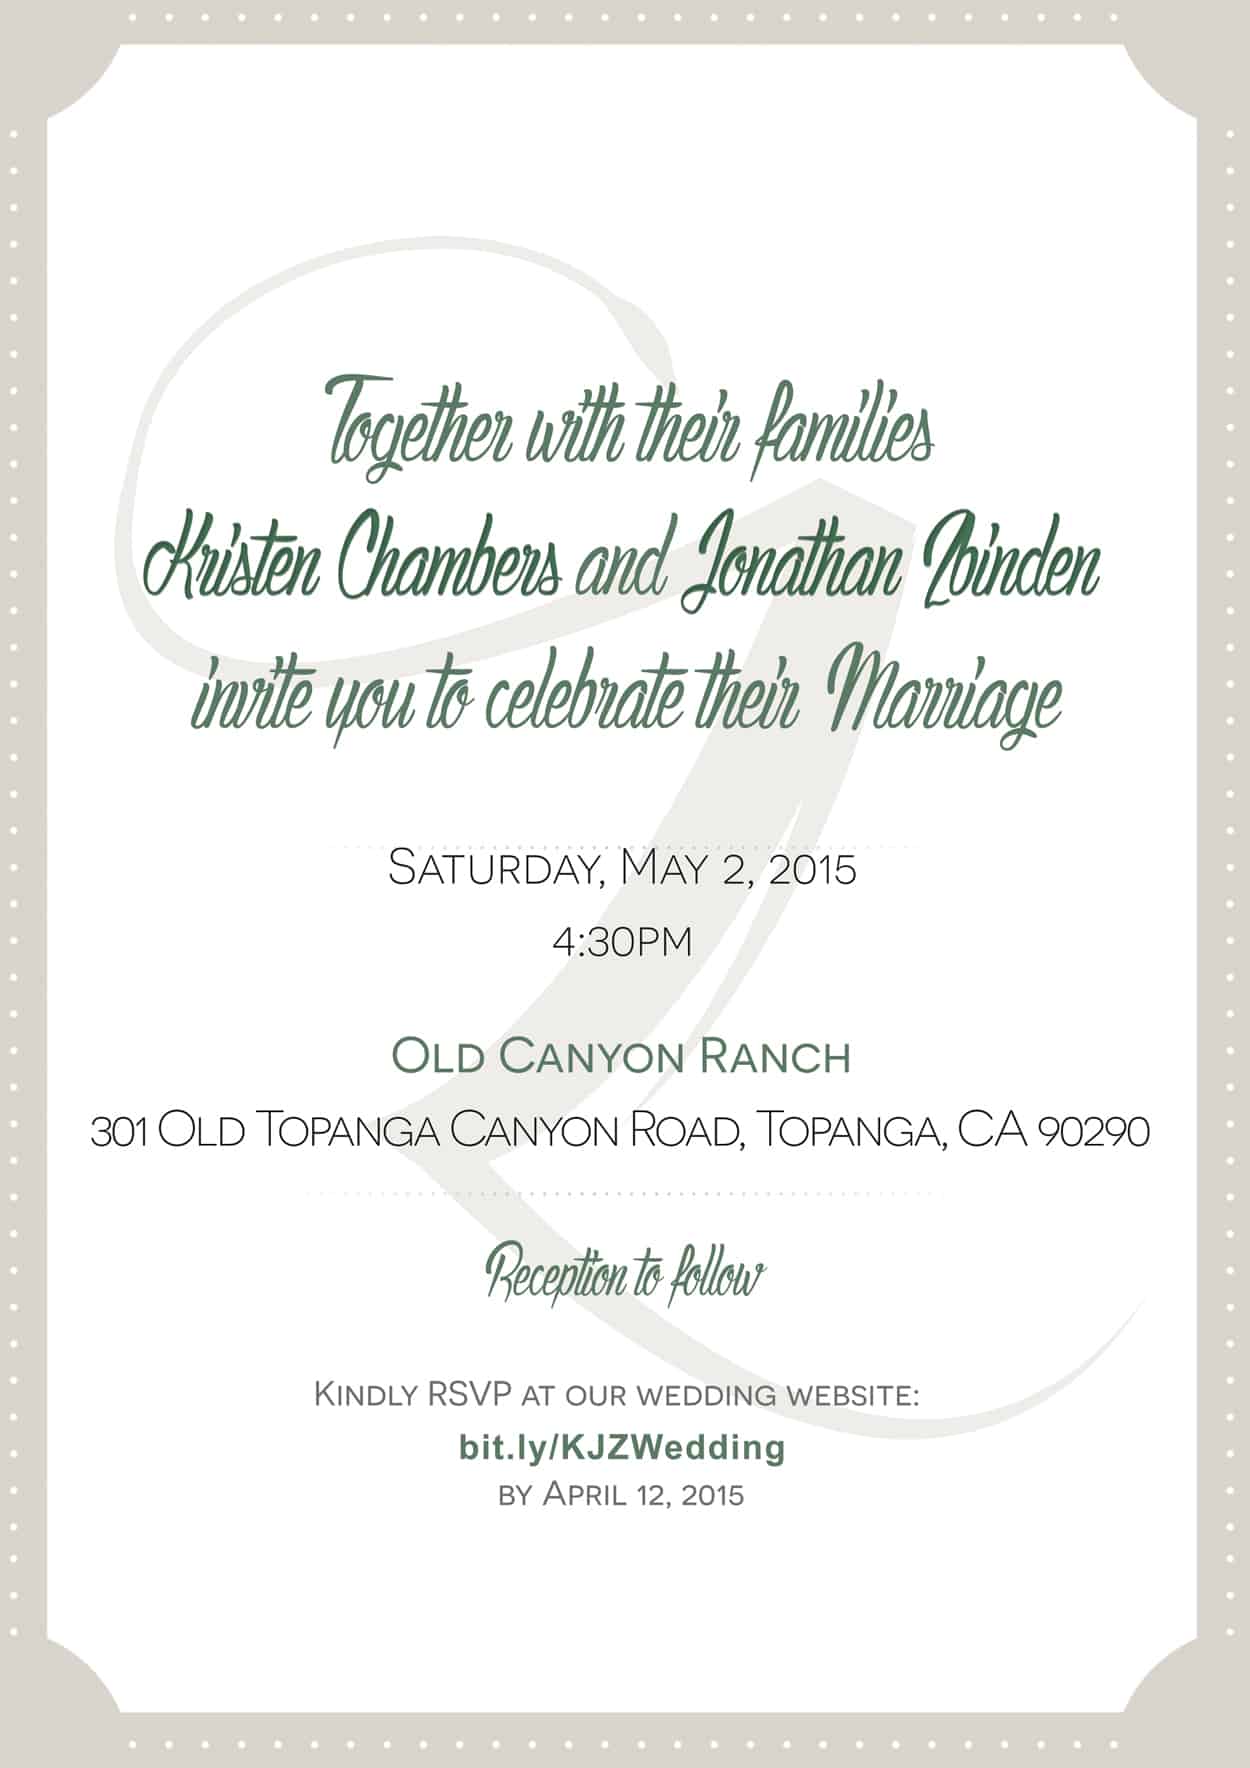 zbinden - wedding invitation design